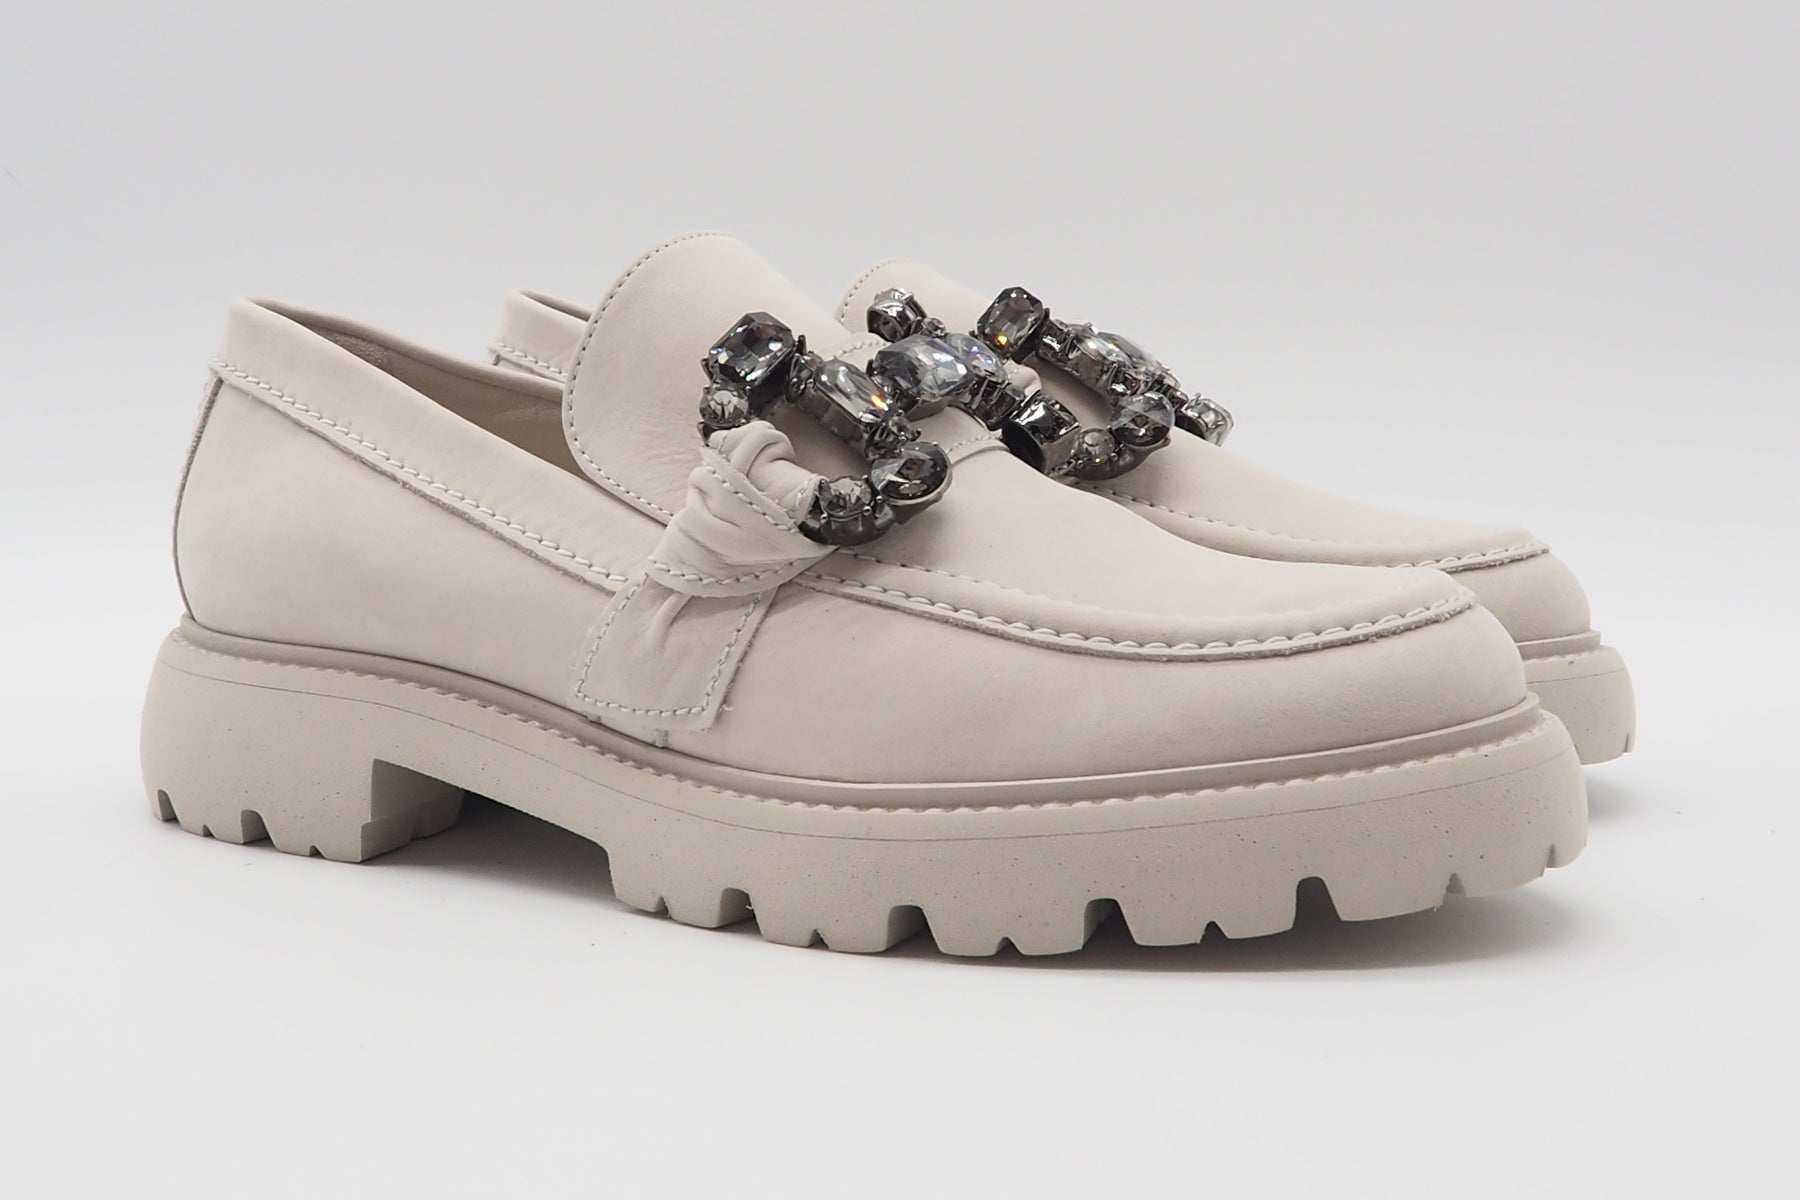 Damen Loafer aus Nubukleder in Sand mit Kristallschnalle - PRINT - Absatz 3cm Damen Loafers & Schnürer Kennel & Schmenger 